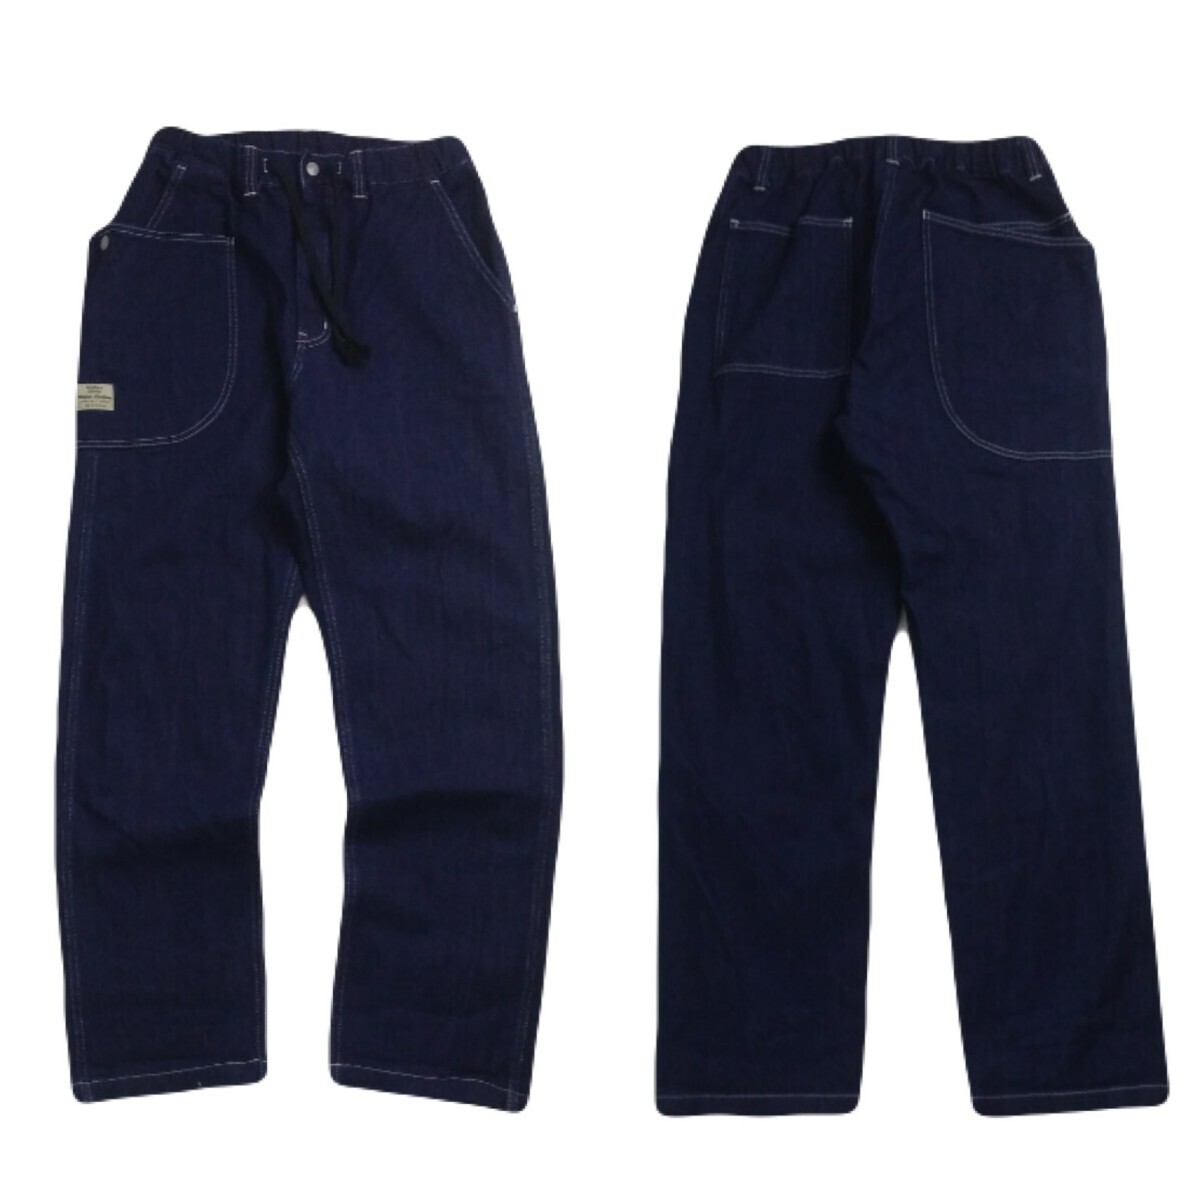  как новый темно синий первоклассный . остров джинсы стрейч Roo z Fit легкий брюки Denim брюки ji- хлеб рабочие брюки мужской W32 сделано в Японии 2405133